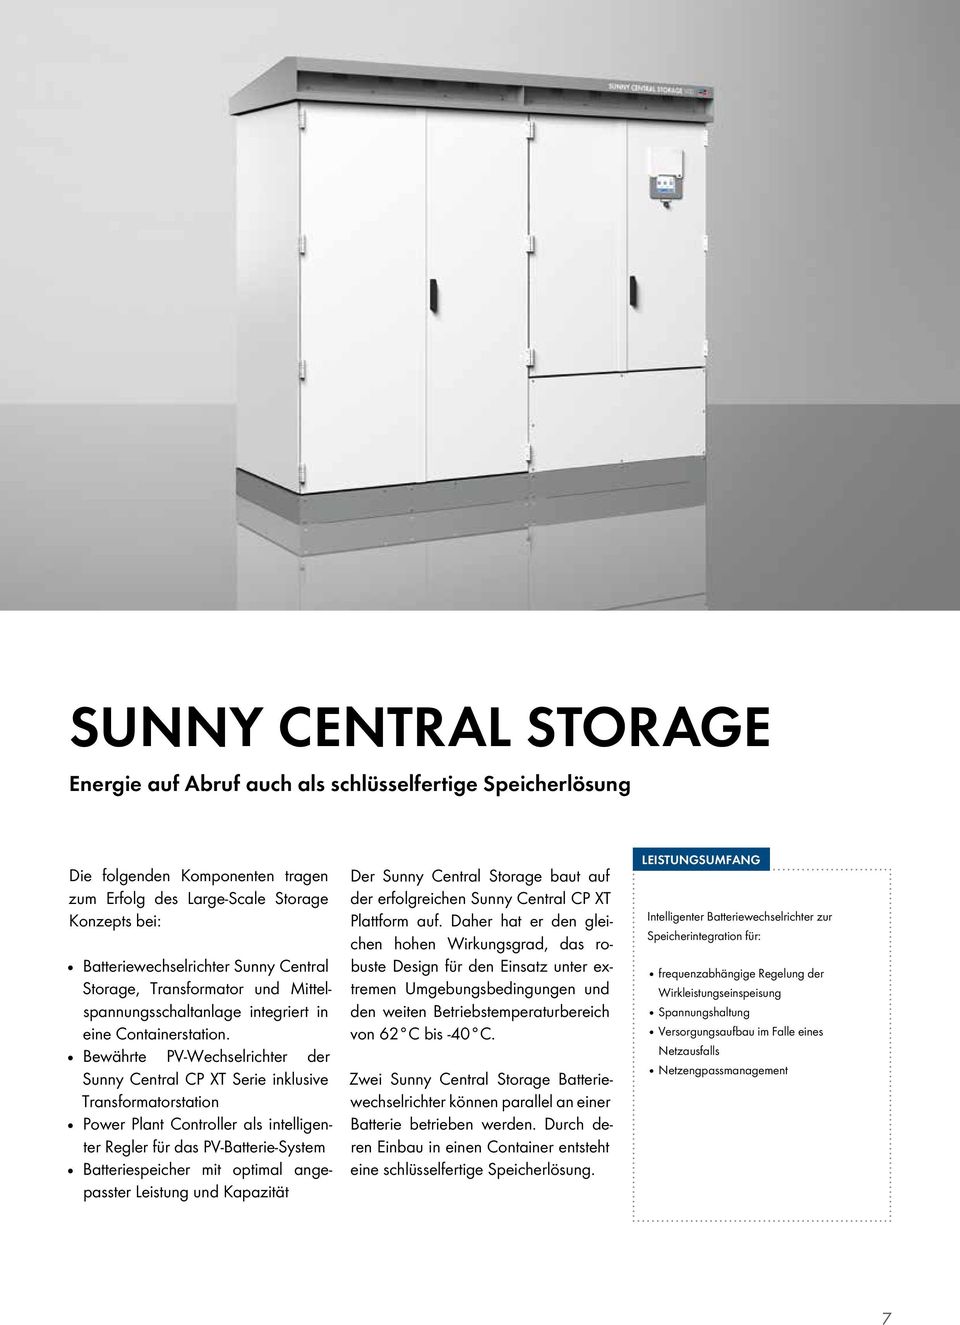 Bewährte PV-Wechselrichter der Sunny Central CP XT Serie inklusive Transformatorstation Power Plant Controller als intelligenter Regler für das PV-Batterie-System Batteriespeicher mit optimal